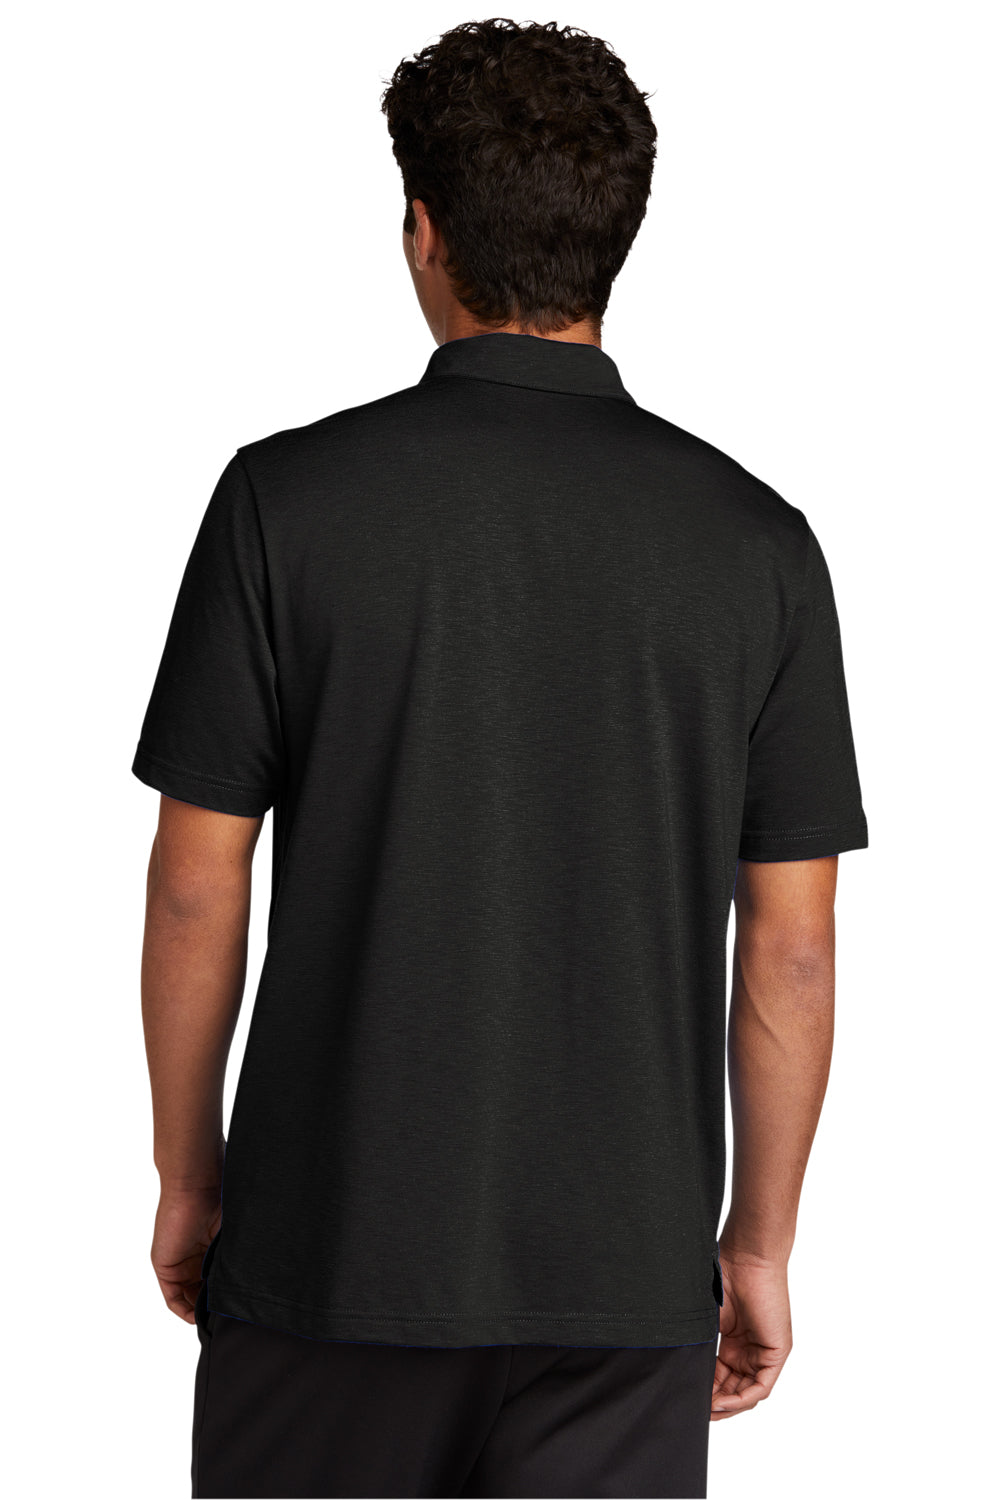 Sport-Tek Mens Strive Short Sleeve Polo Shirt Black Side